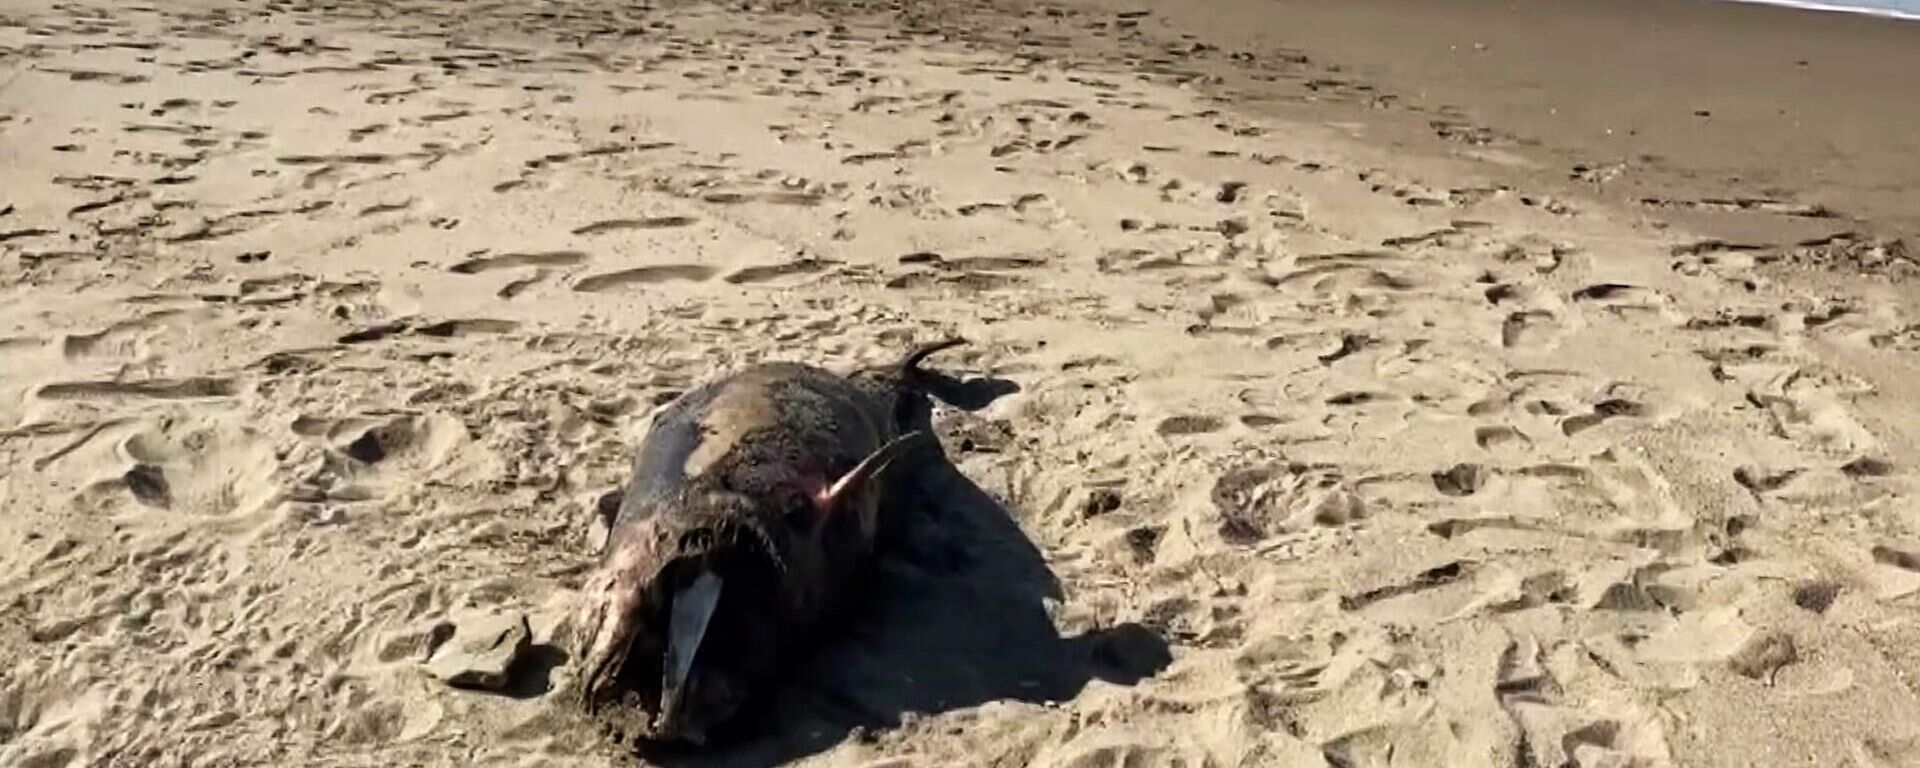 Sakarya’nın Karasu ilçesinde sahile ölü yunus balığı vurdu. - Sputnik Türkiye, 1920, 08.05.2022